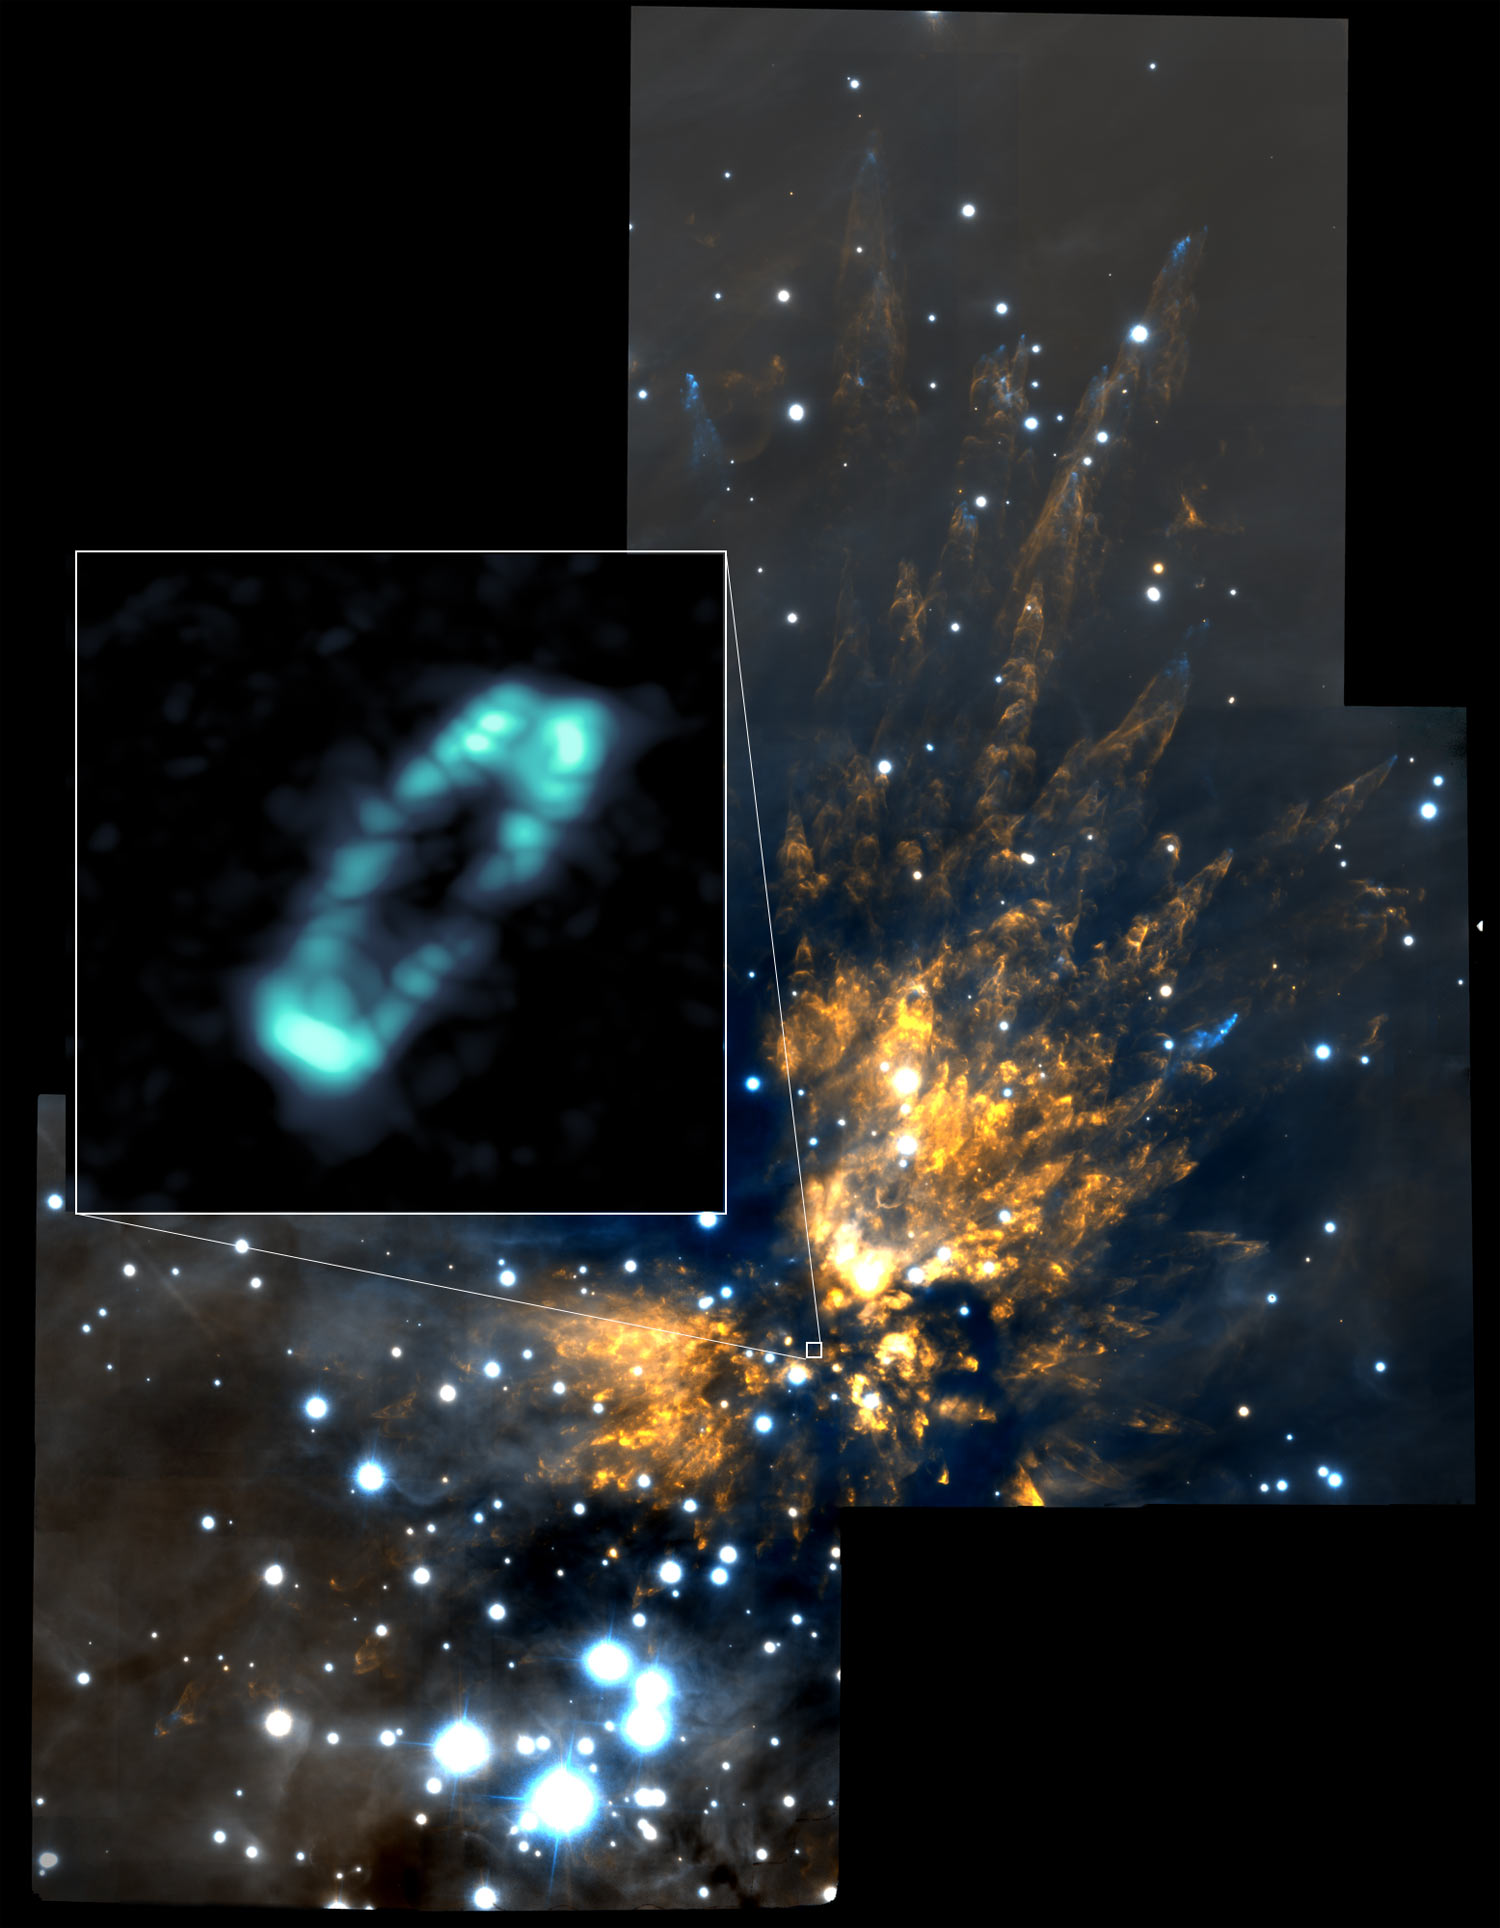 تلسکوپ آلما موفق به شناسایی نمک در اطراف ستاره جوان شد 1